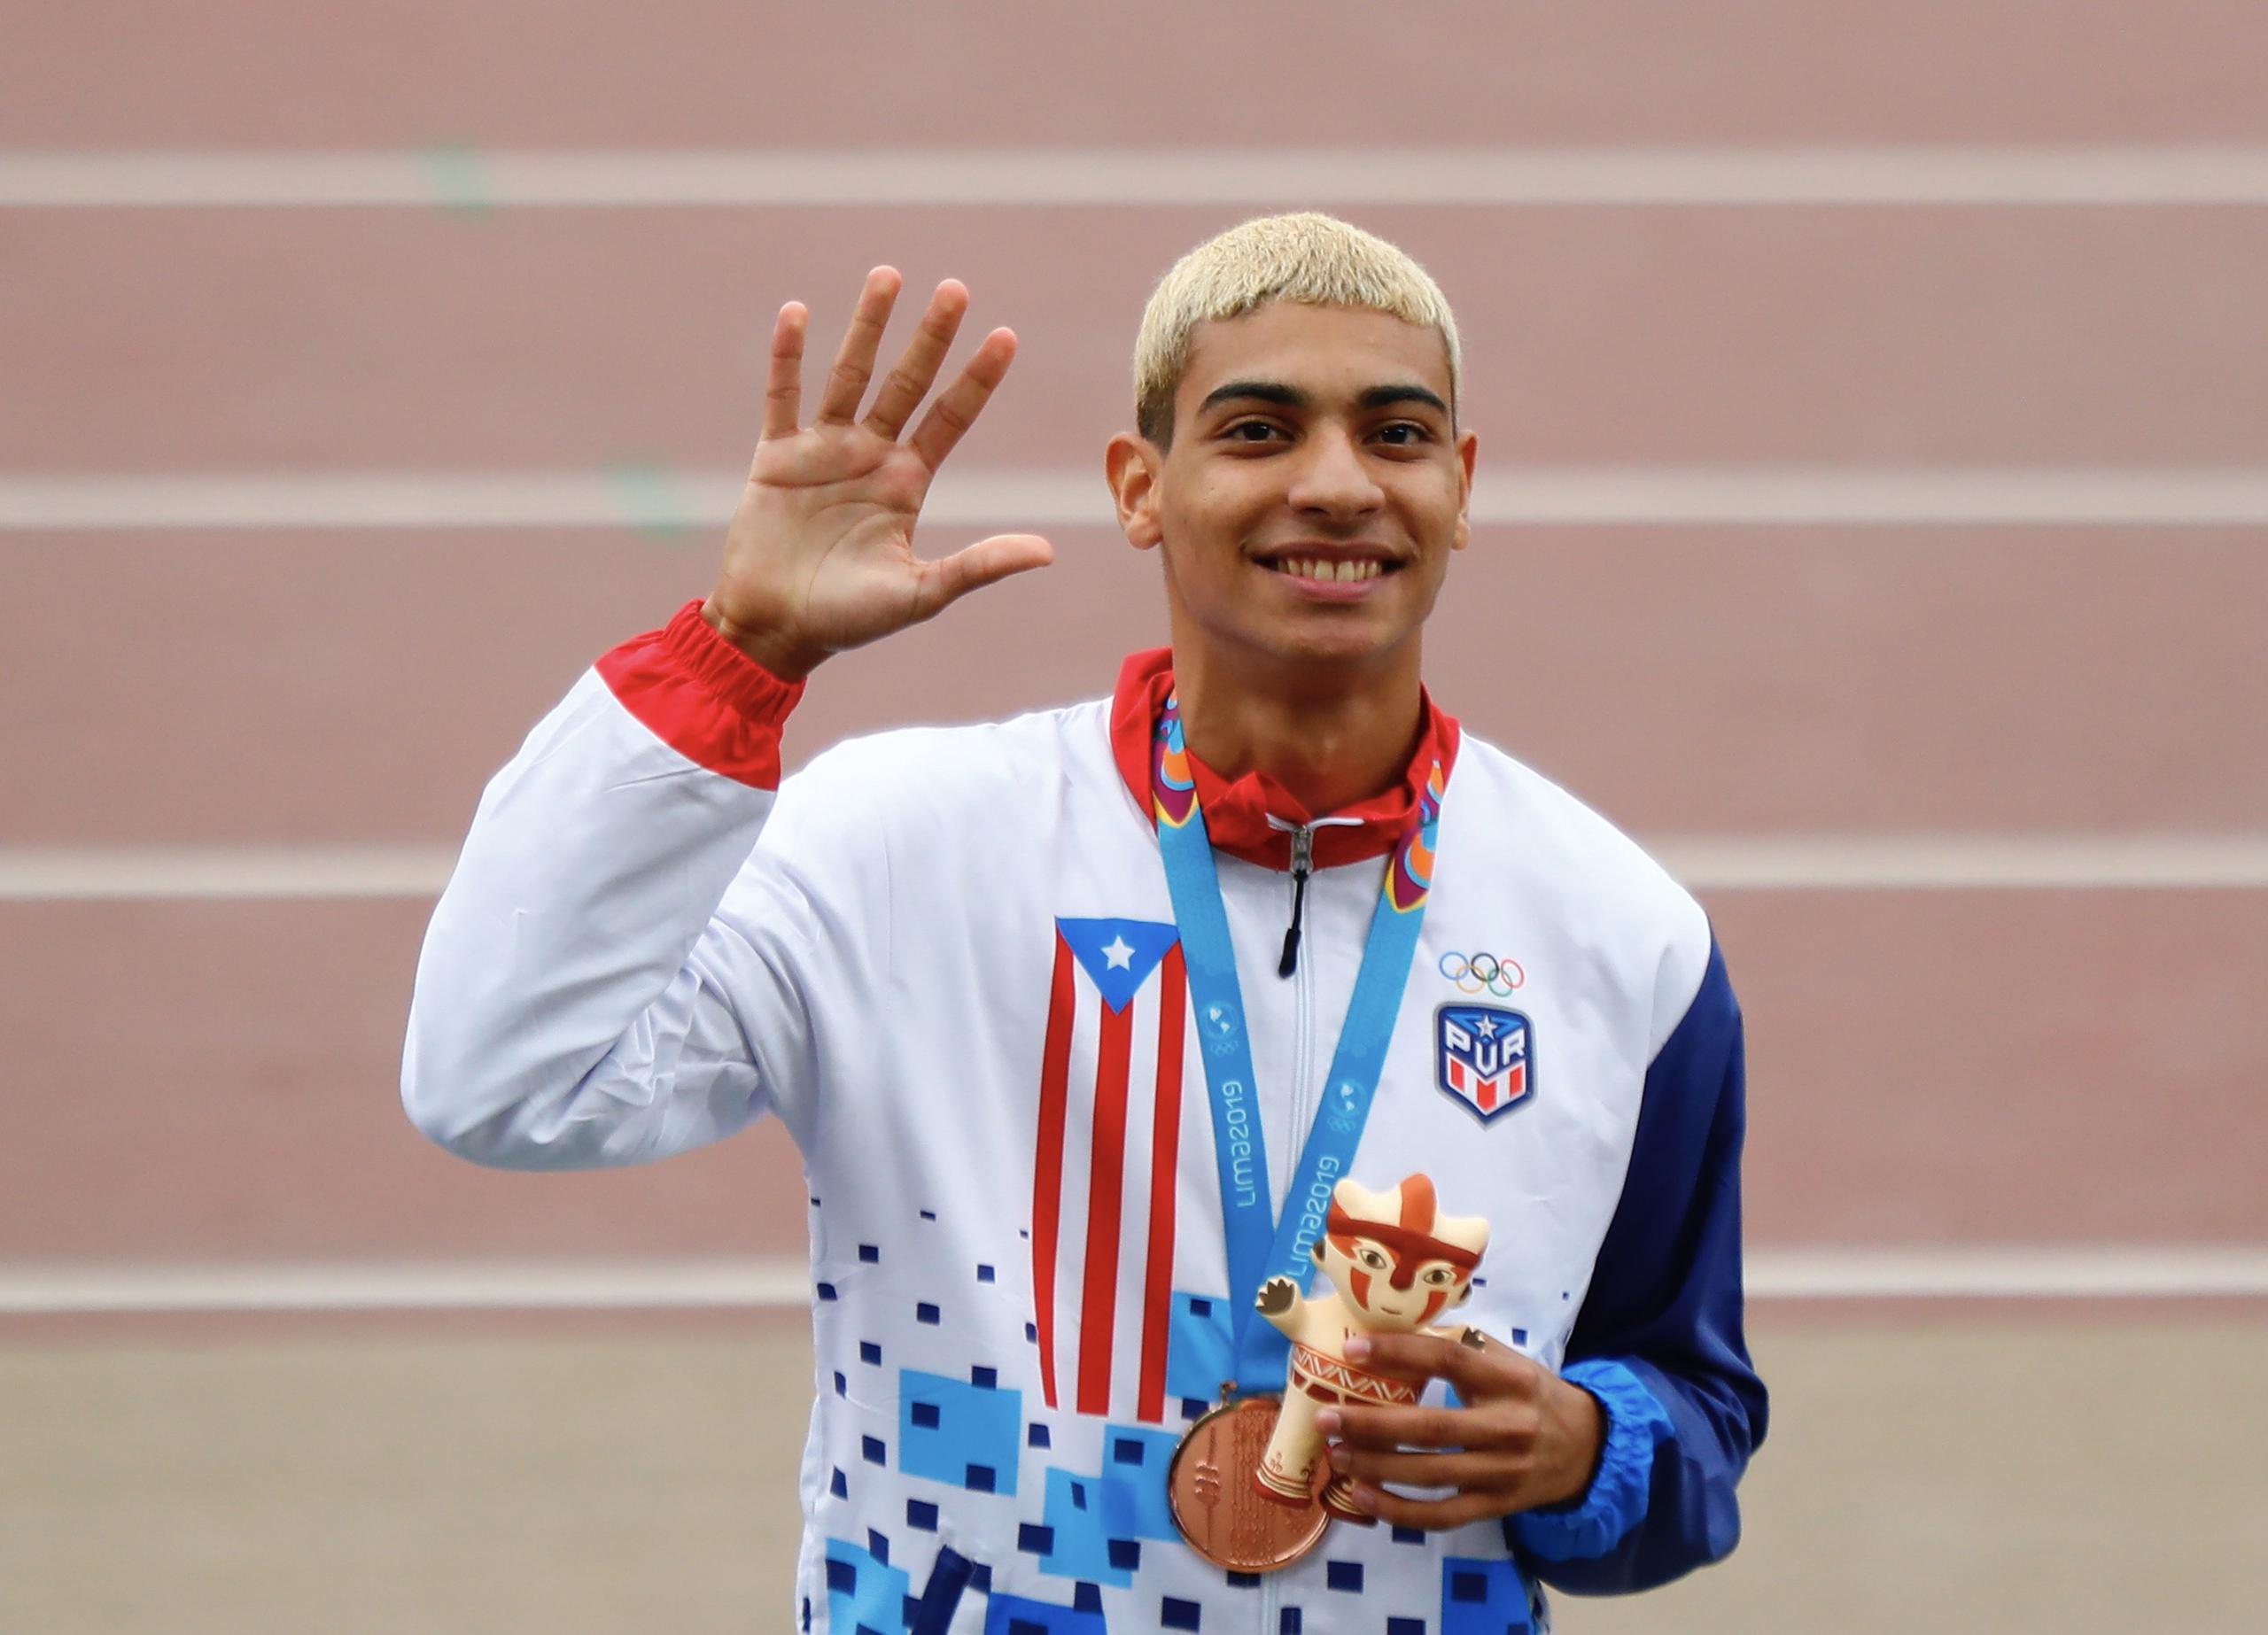 El corredor Ryan Sánchez, clasificado a las Olimpiadas en los 800 metros, es uno de los atletas beneficiados por Carlos Delgado.